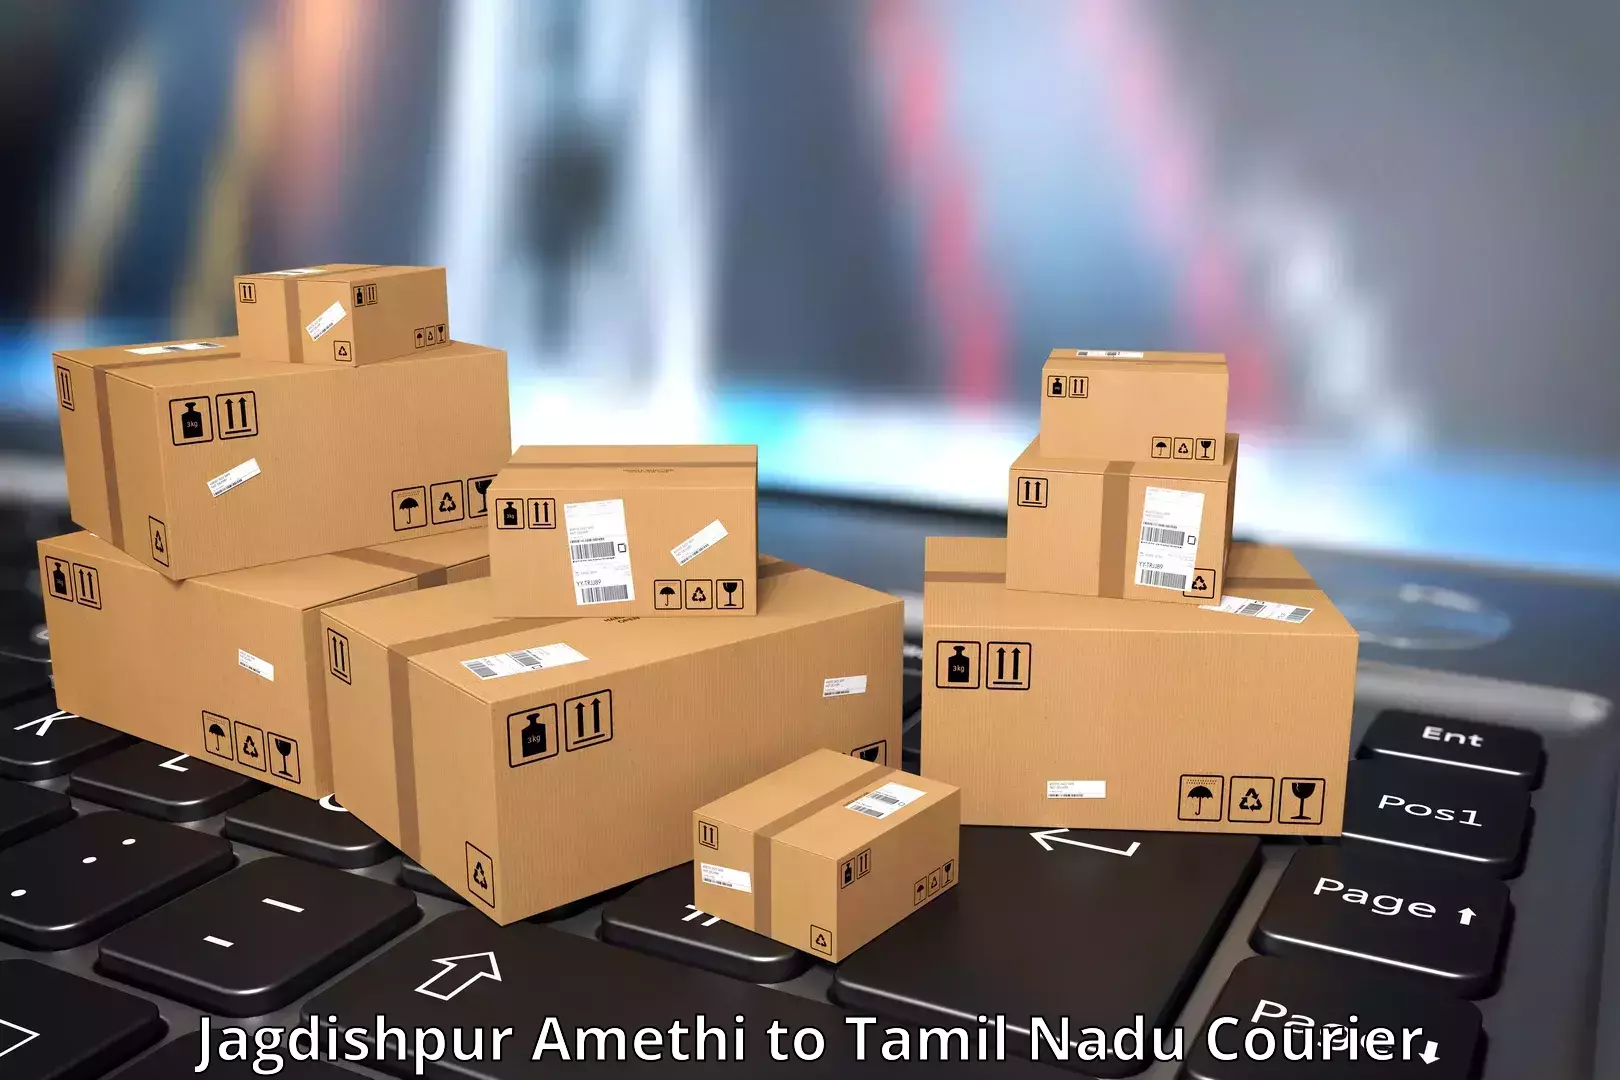 Optimized delivery routes Jagdishpur Amethi to Gobichettipalayam